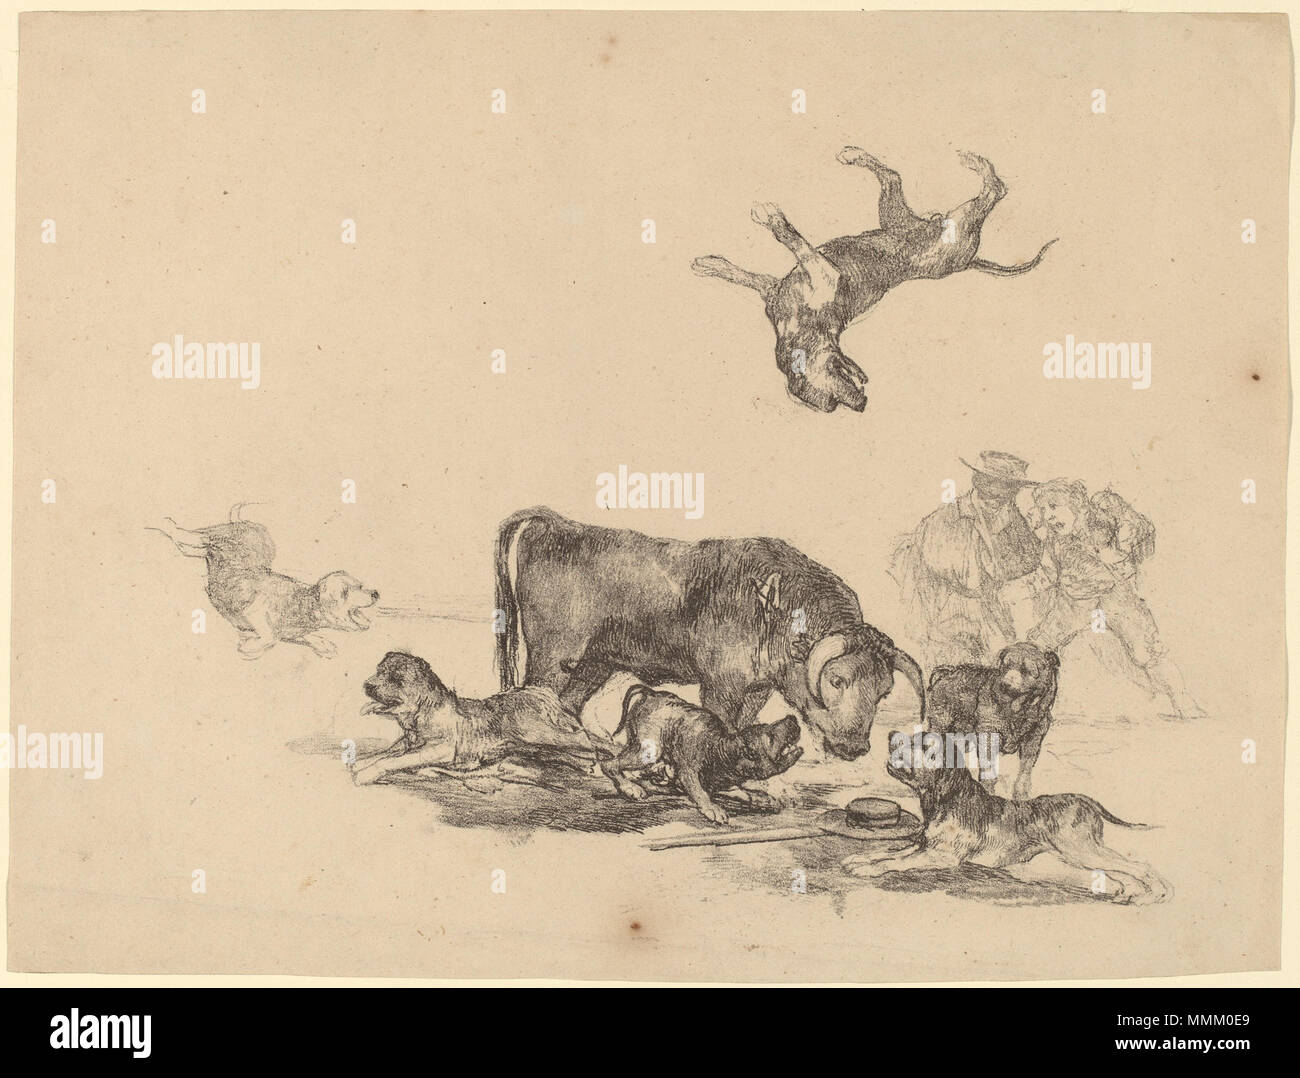 Francisco de Goya, Stier durch Hunde, Spanisch, 1746 - 1828 angegriffen, C. 1825, Lithographie, Rosenwald Collection Goya - Stier von Hunden angegriffen Stockfoto